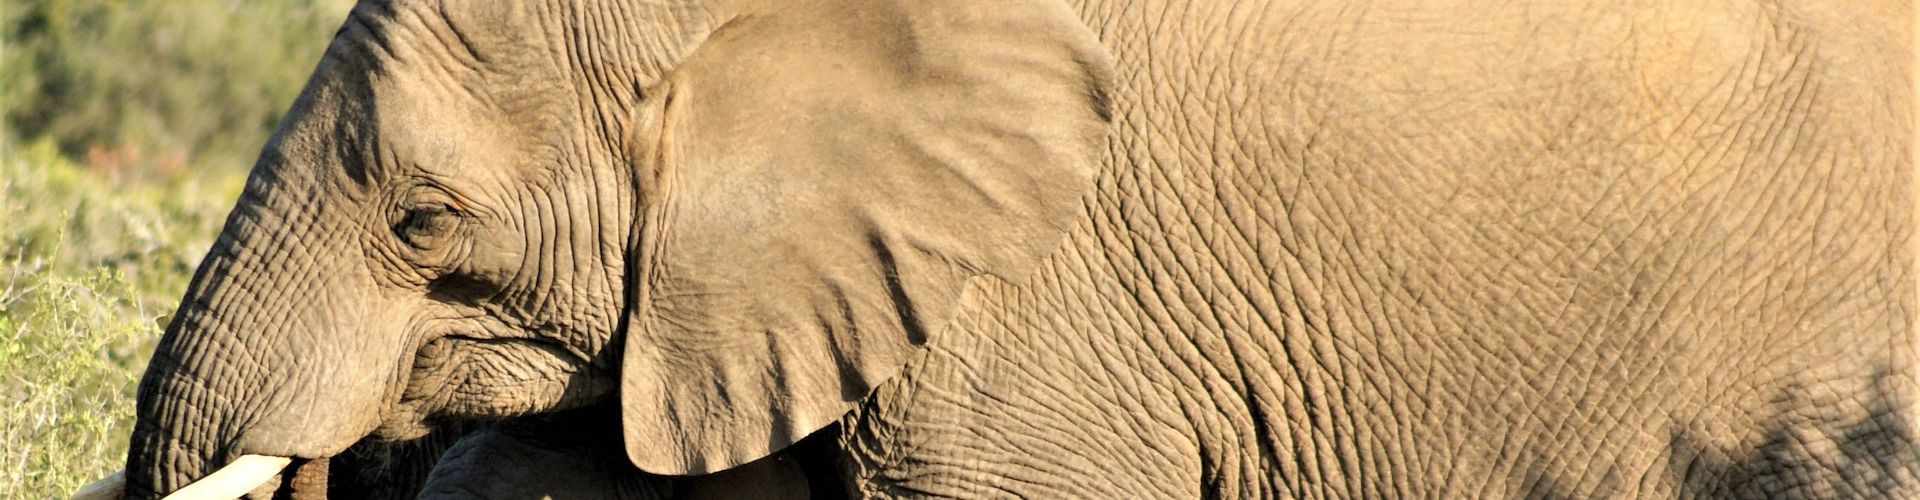 Immagine ravvicinata di un pachiderma (elefante) africano